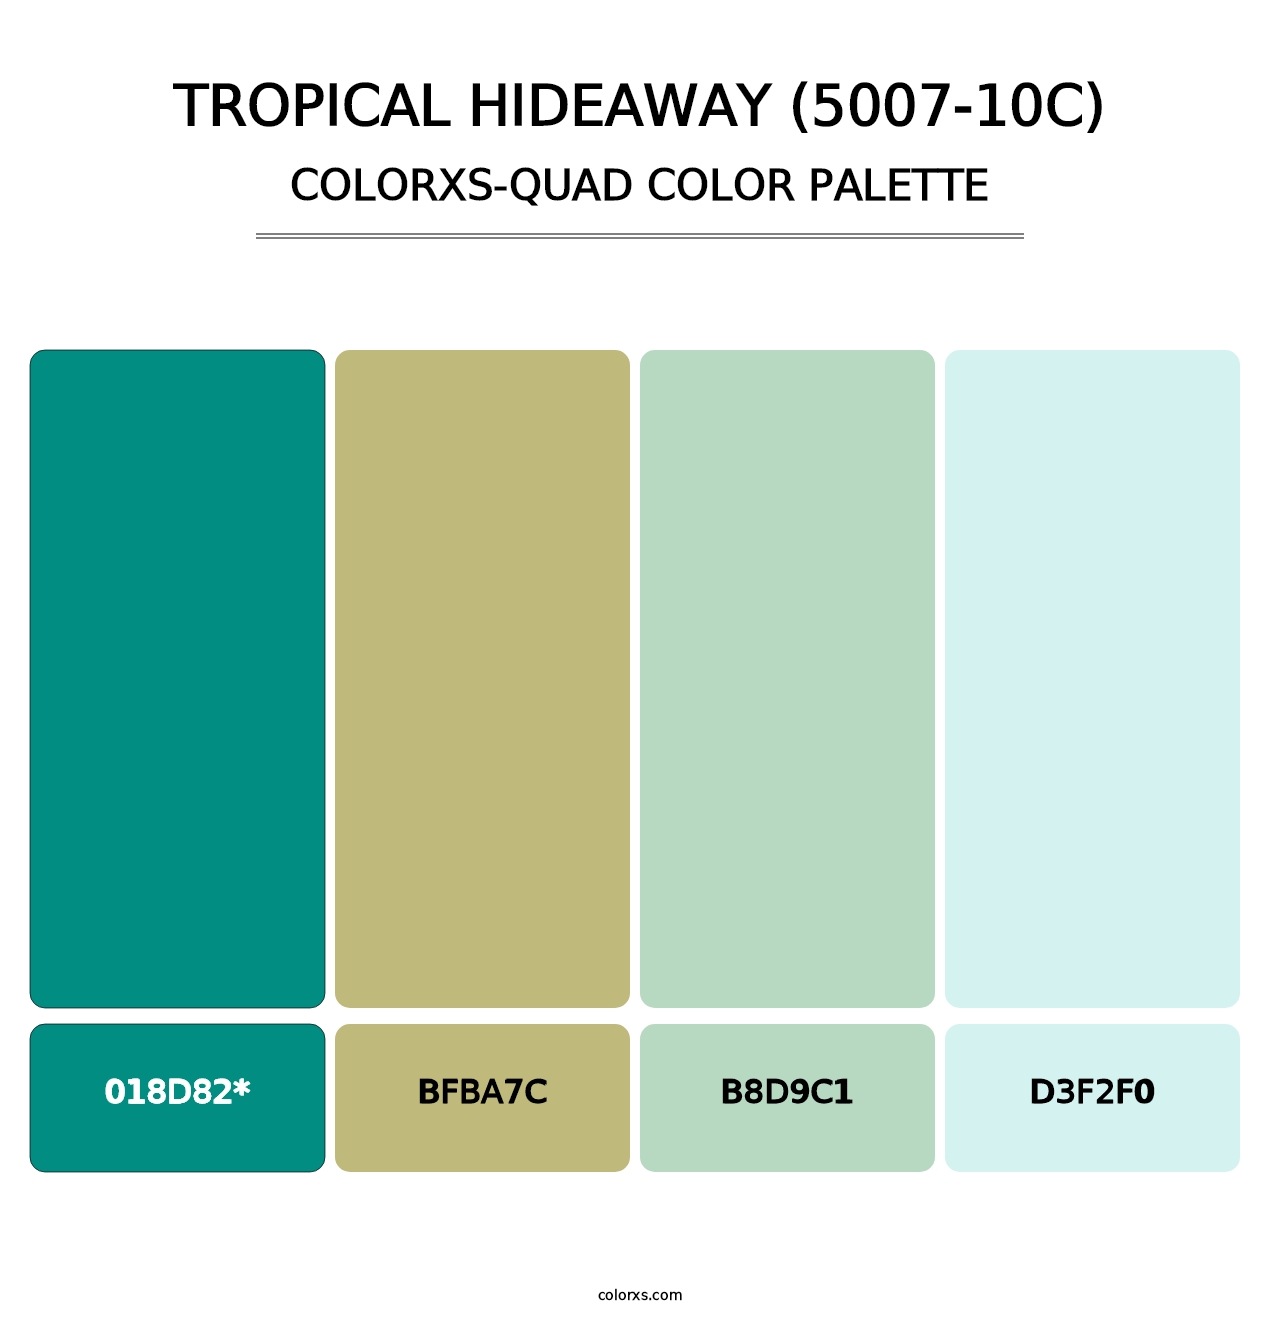 Tropical Hideaway (5007-10C) - Colorxs Quad Palette